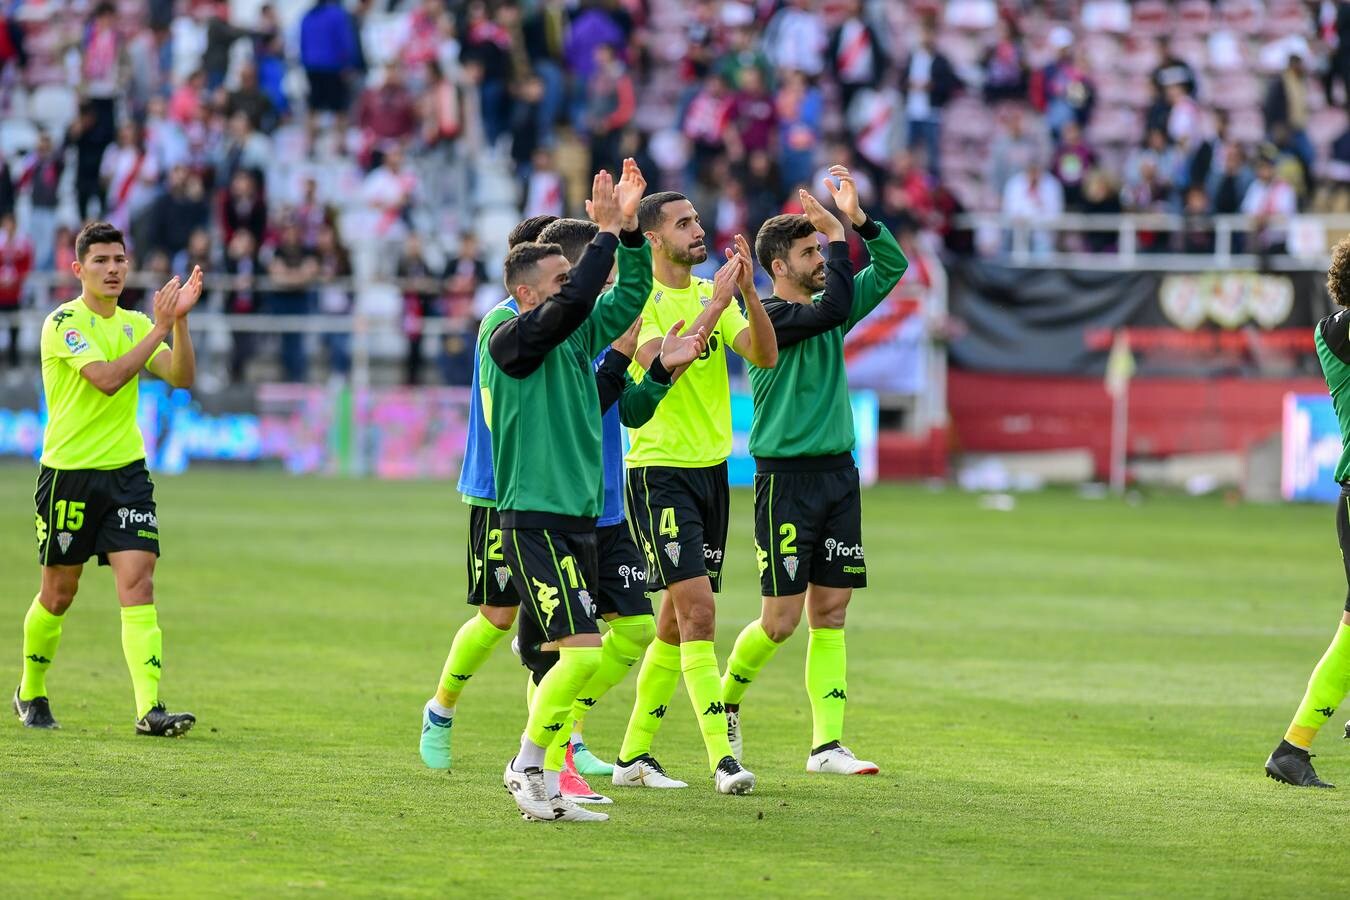 El sorpresón del Córdoba CF ante un Rayo líder, en imágenes